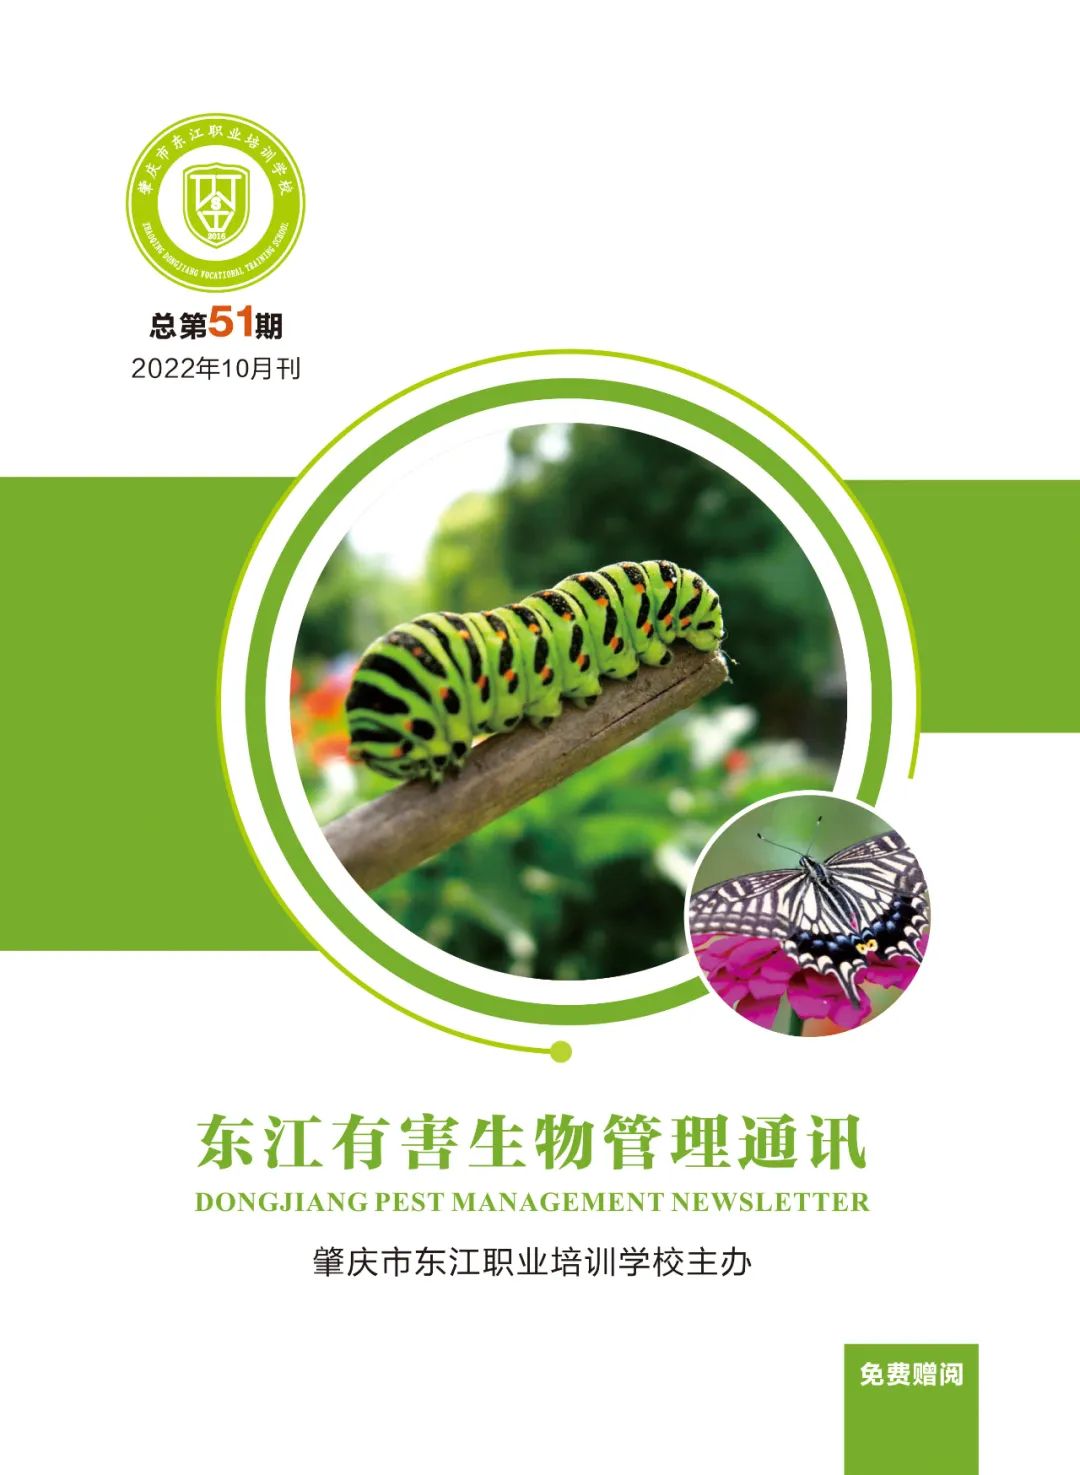 第51期《东江有害生物管理通讯》